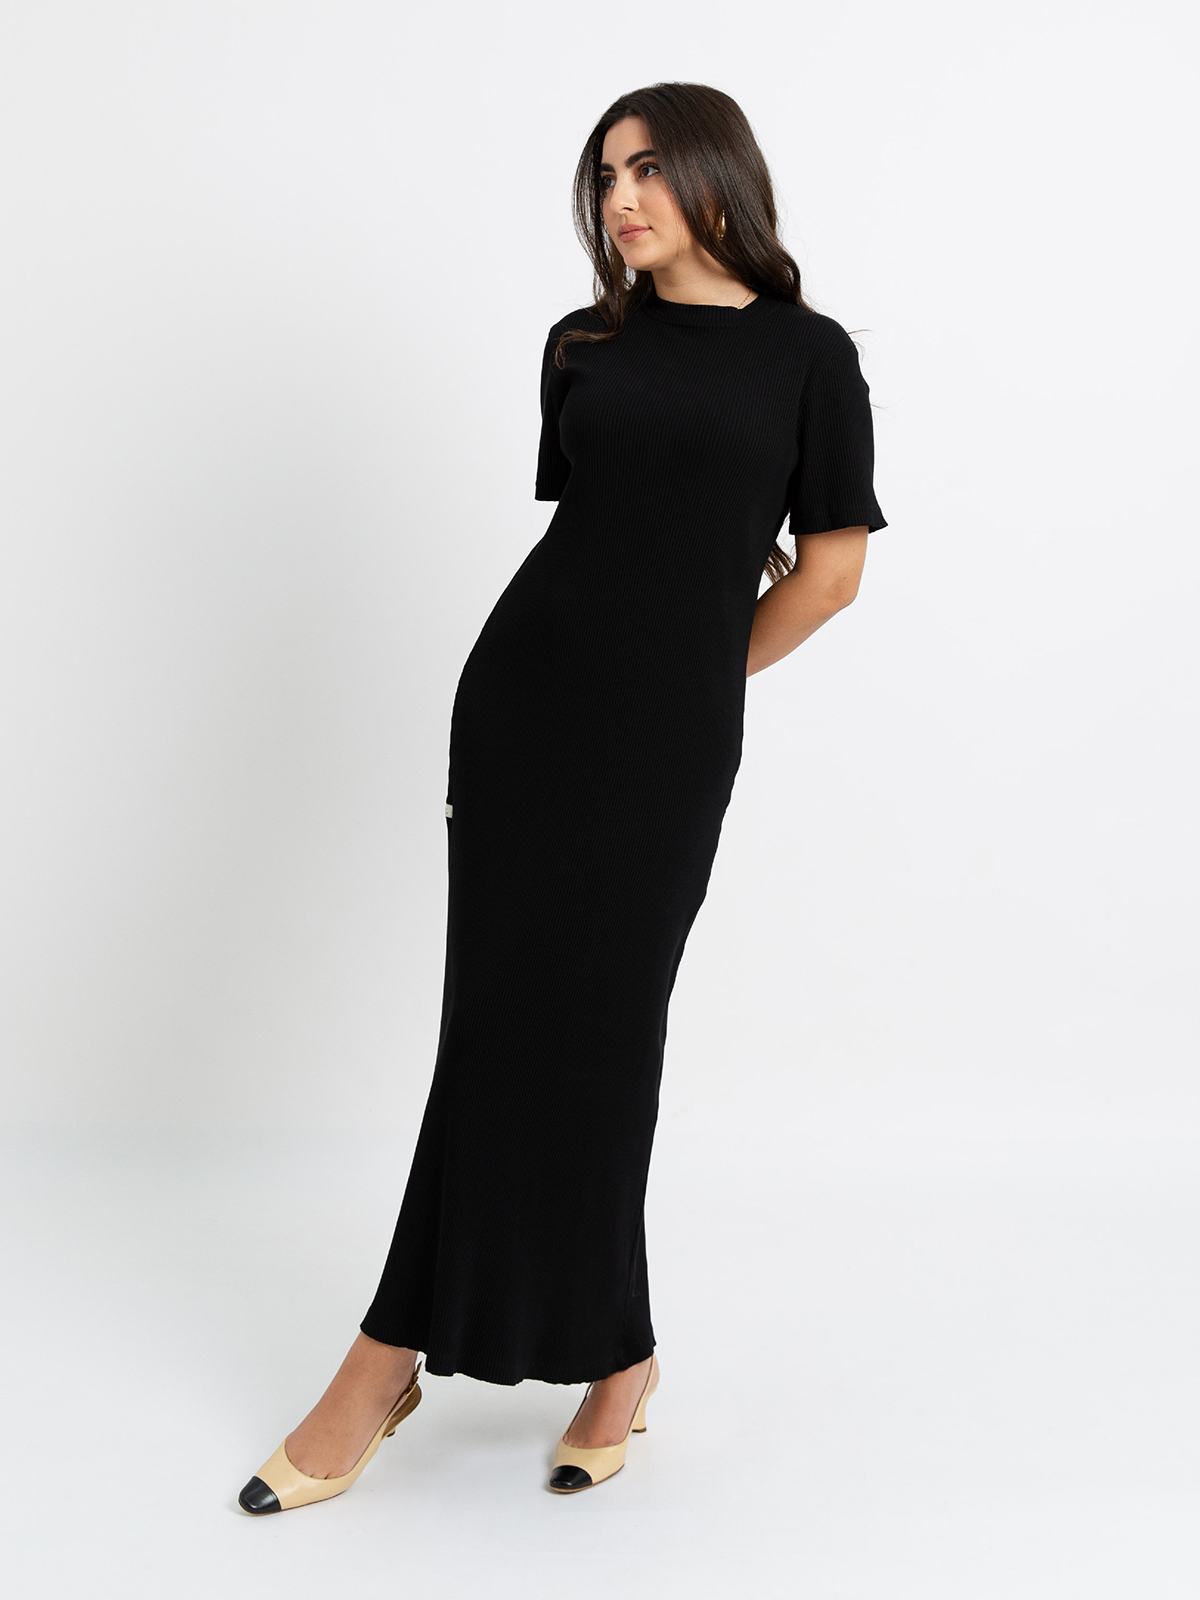 Black - Knitted Long Dress